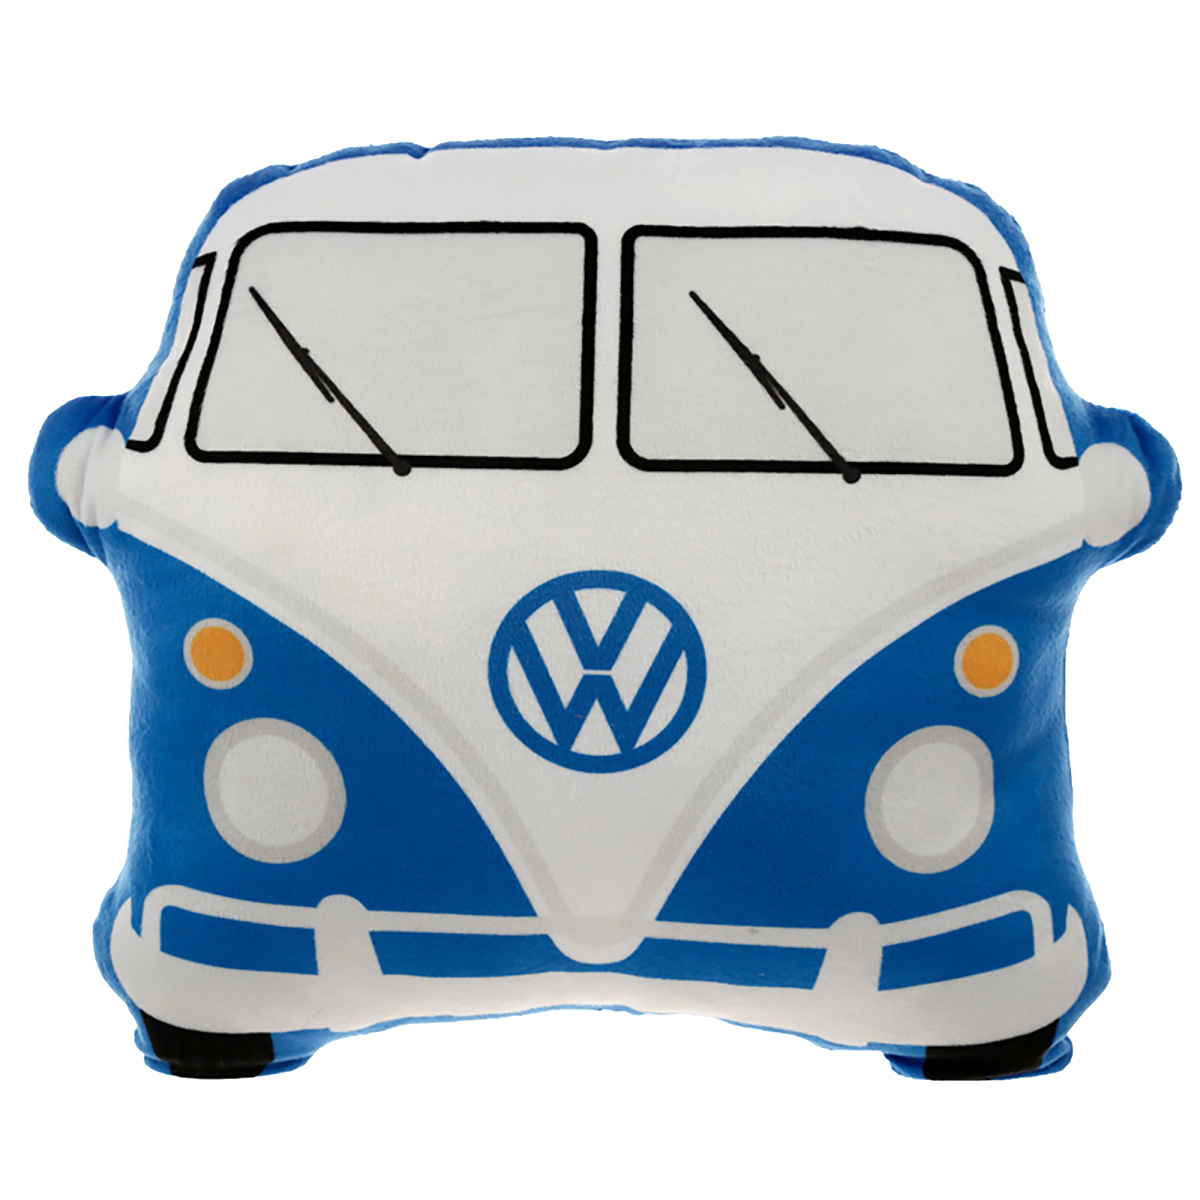 Boutique officielle Volkswagen : Vêtements, accessoires, objets Volkswagen